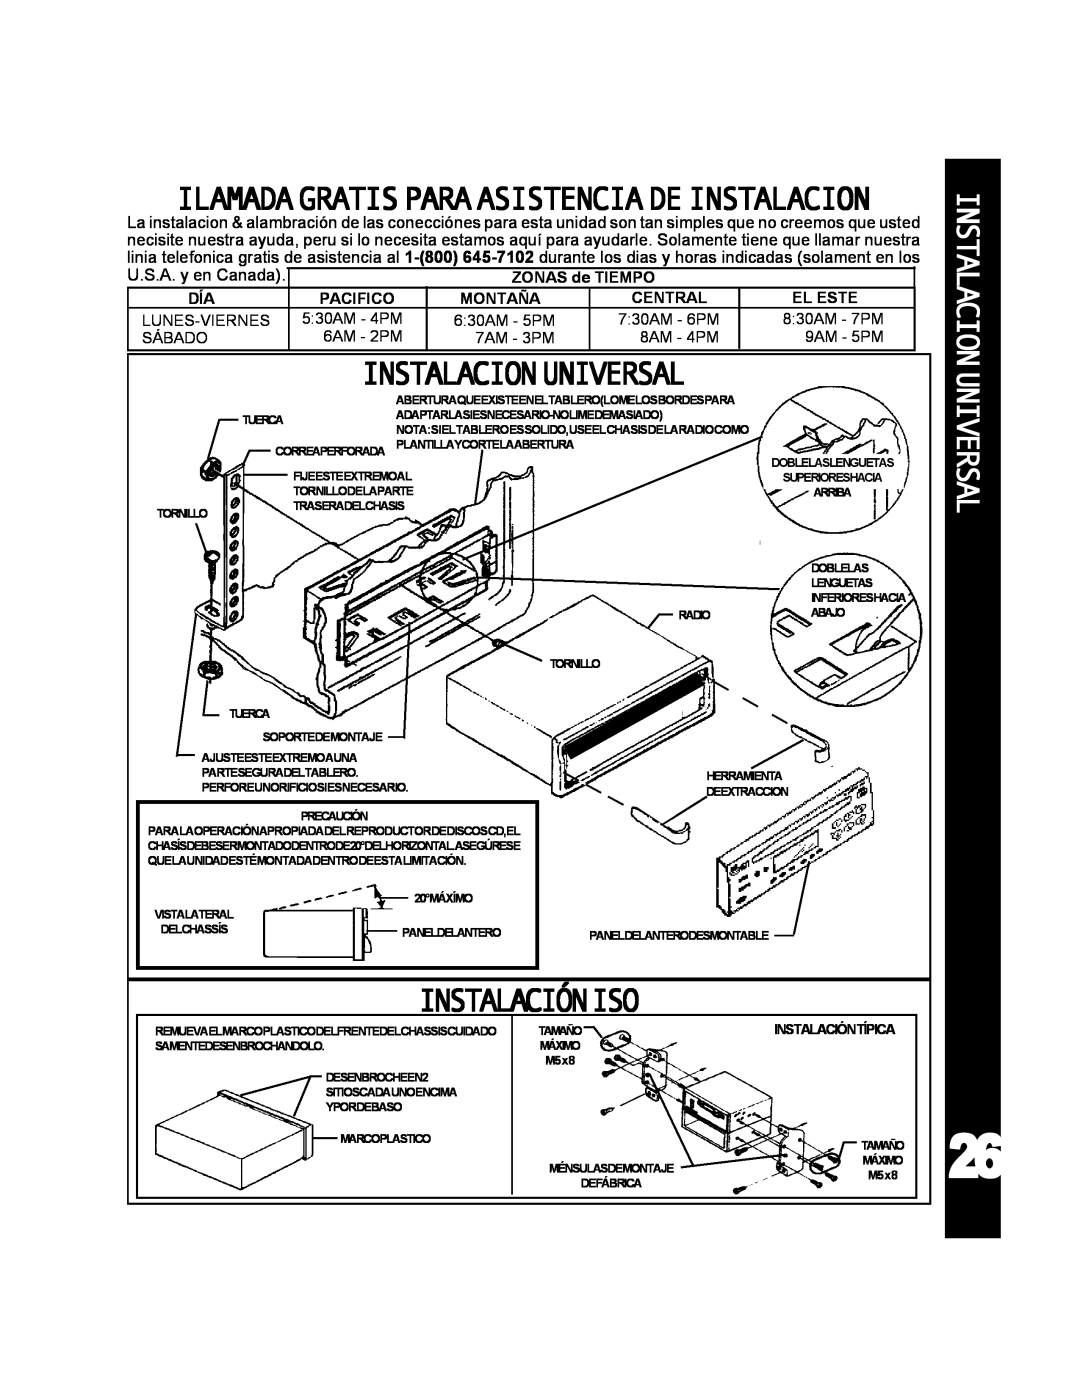 Audiovox ACD-25 manual Instalacionuniversal, Ilamadagratisparaasistenciadeinstalacion, Instalacióniso 